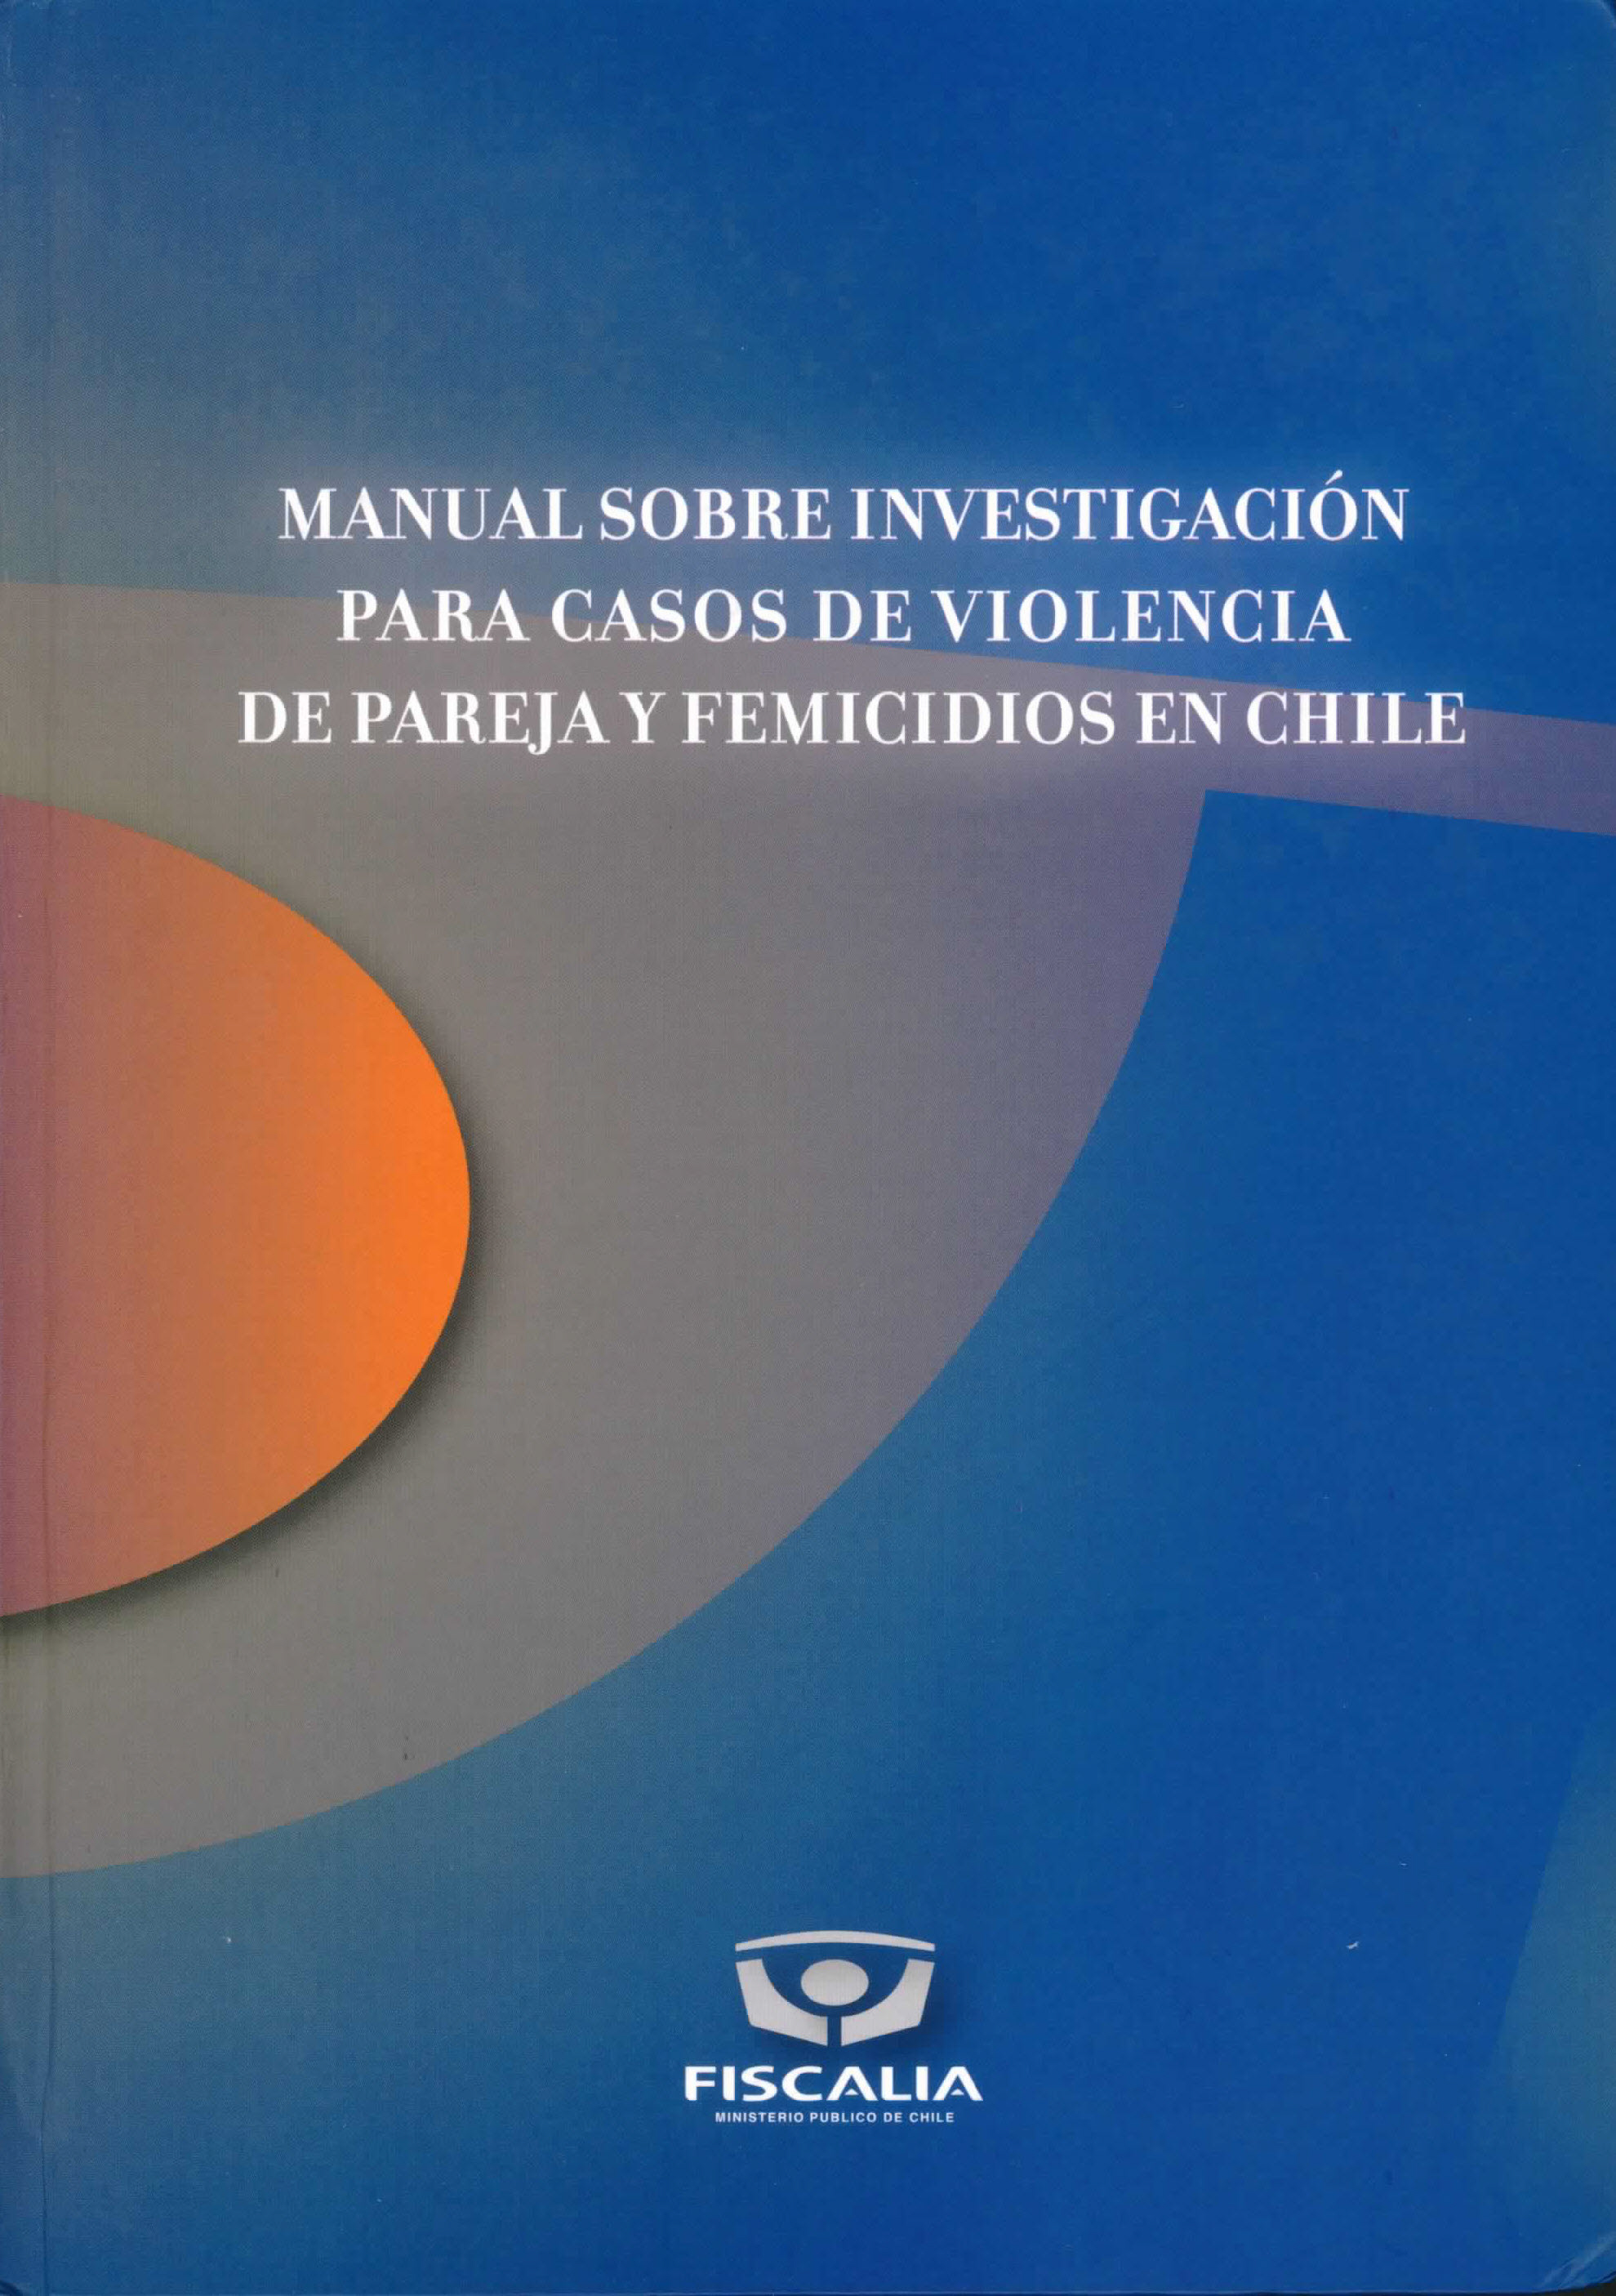 Manual sobre investigación para casos de violencia de pareja en chile